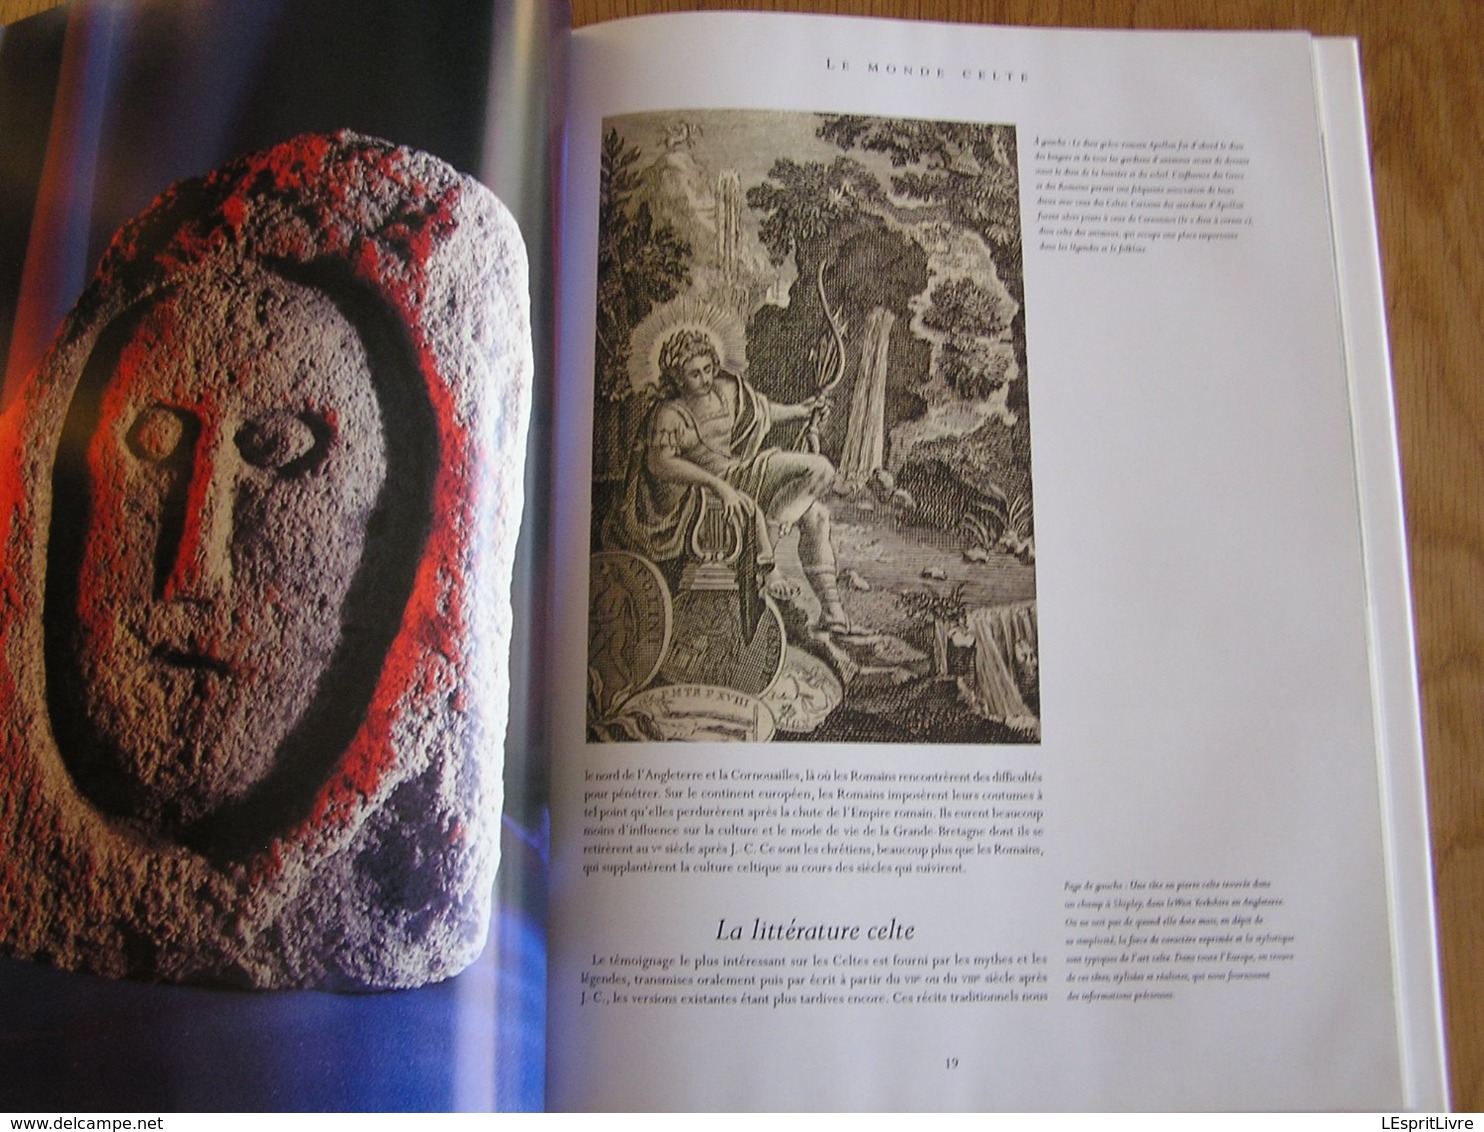 LE MONDE CELTE Histoire Art Celtique Héros Celtiques Age du Fer Gaule Europe Commerce Société Druide Pierres Bretagne